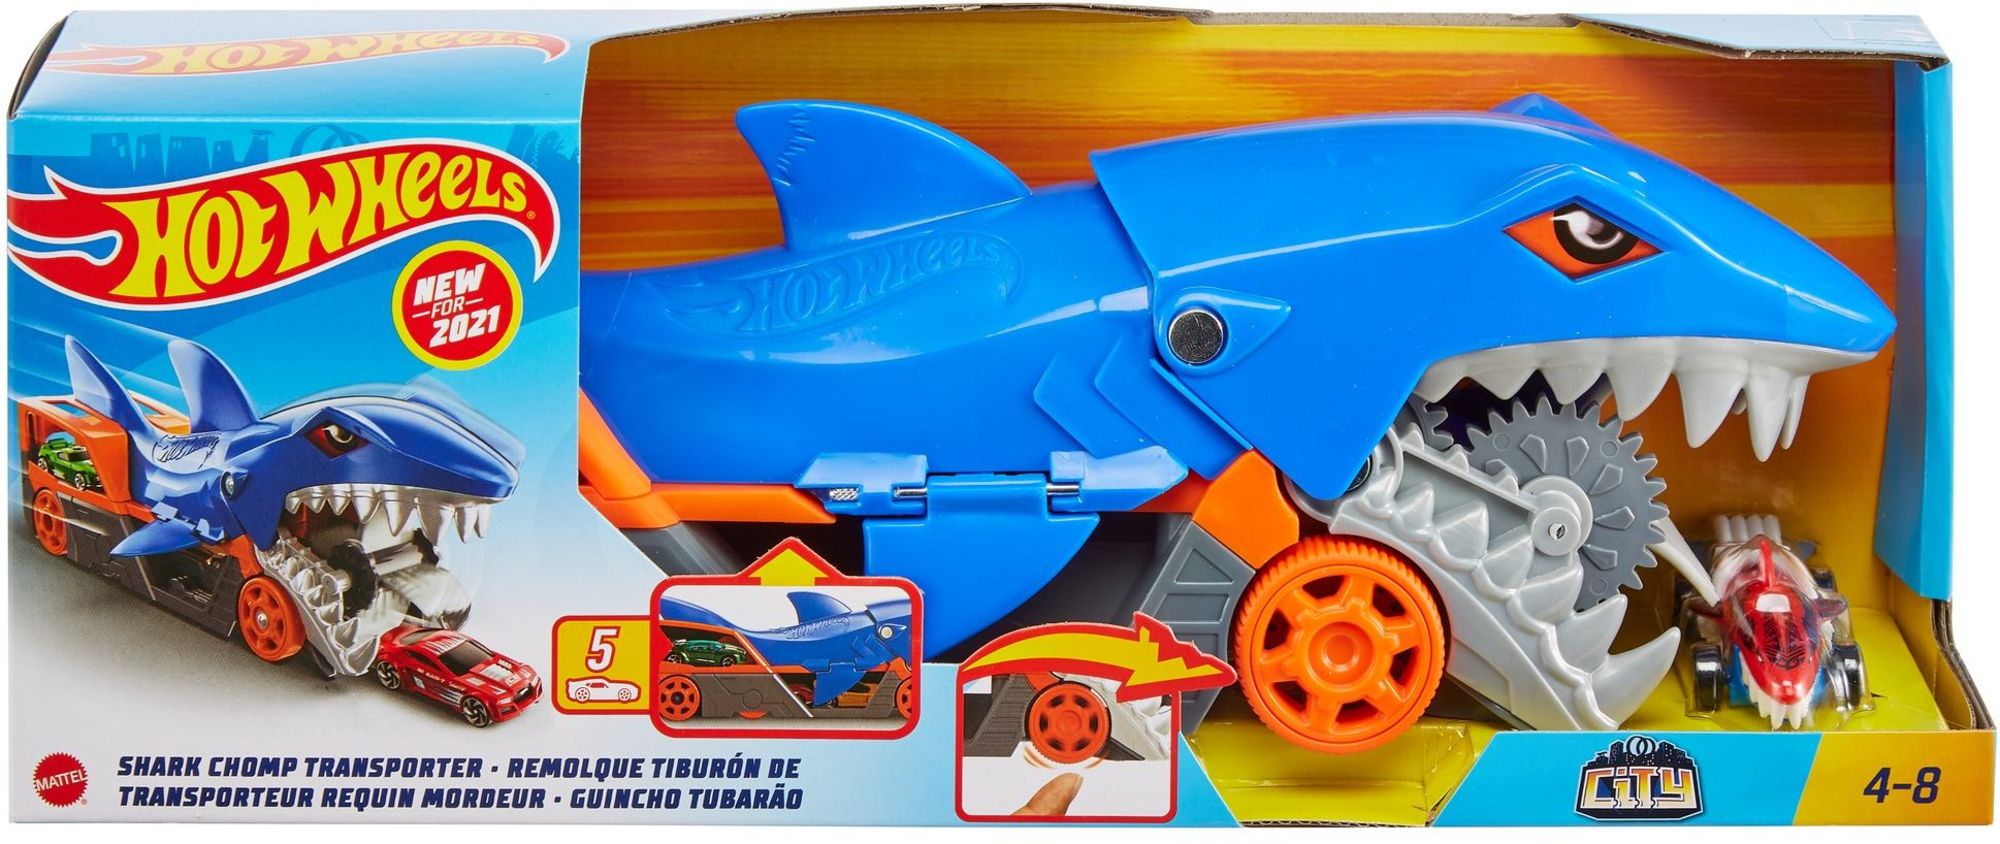 Hot Wheels kaufen Hai-Transporter Spielwaren - bis Spielzeugautos\' zu 5 - für Hungriger